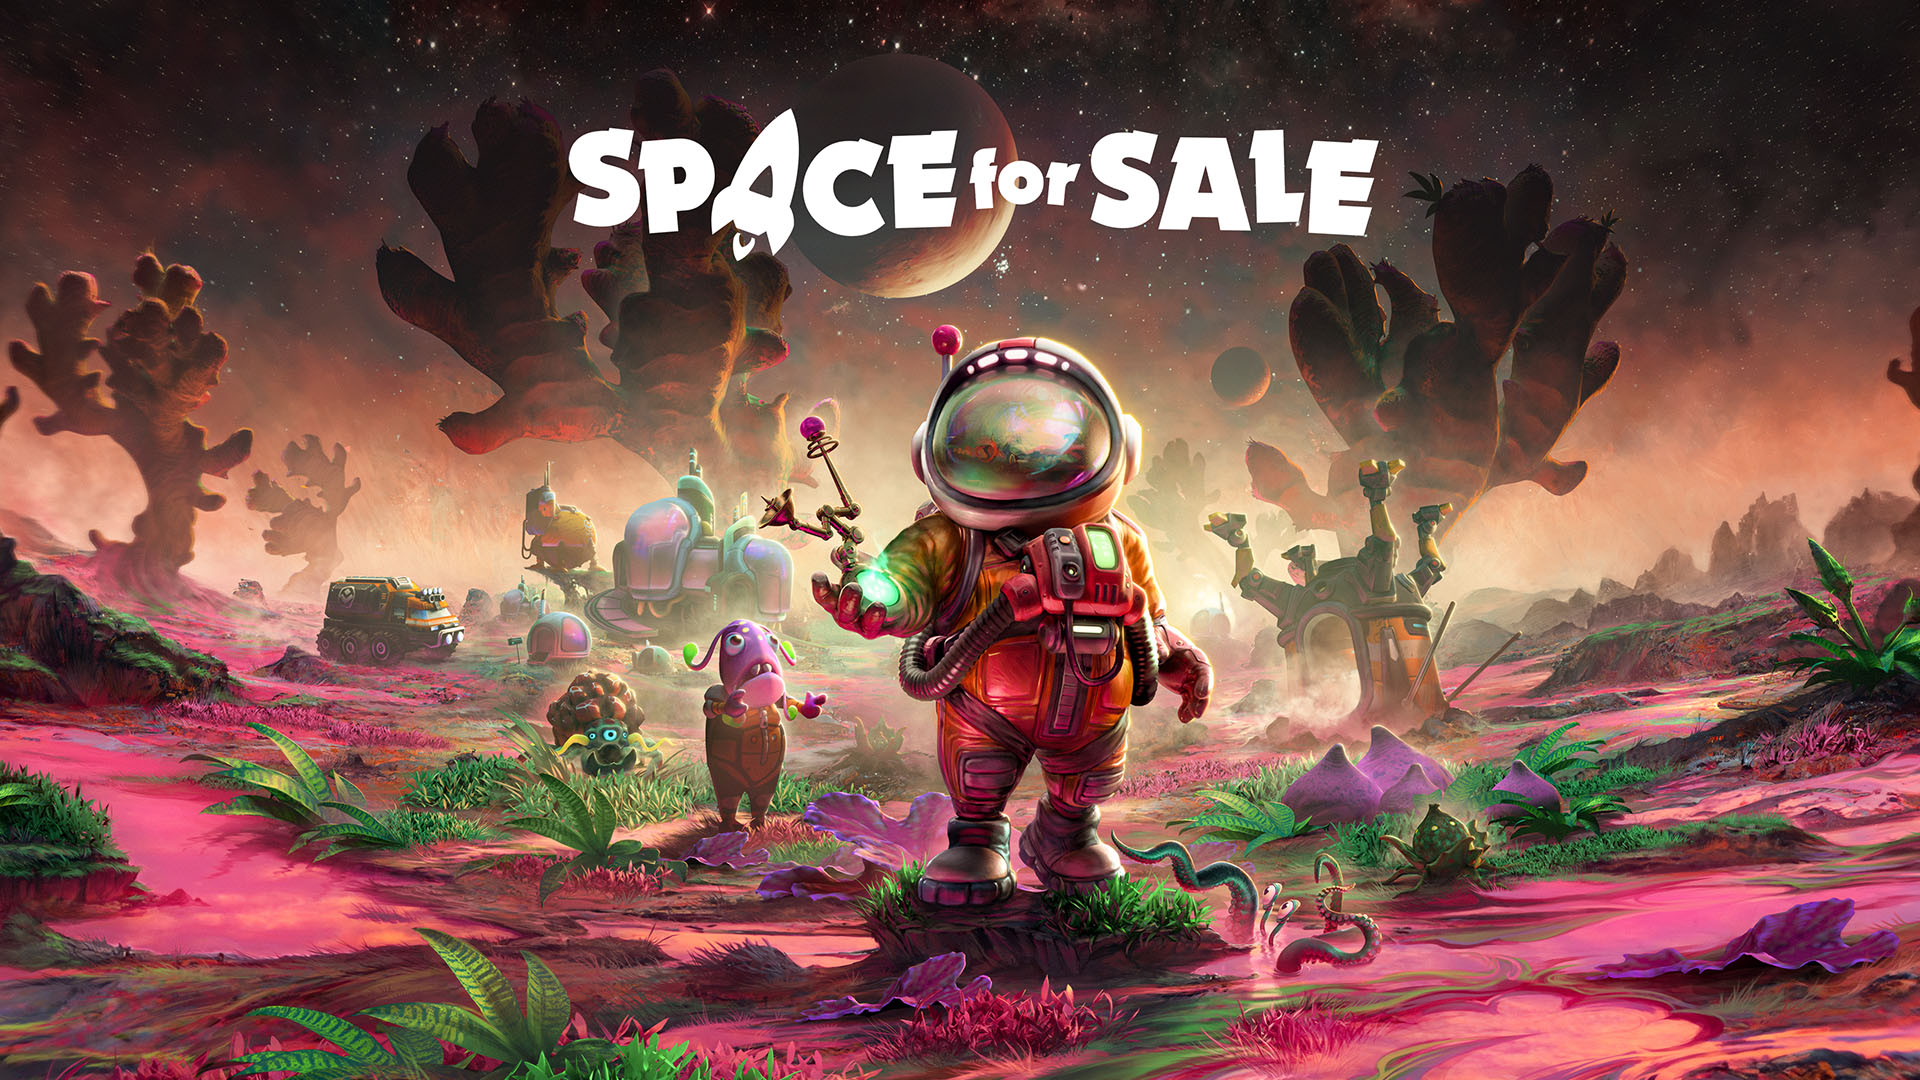 Verkaufe Häuser im Weltraum mit Space for Sale Titel